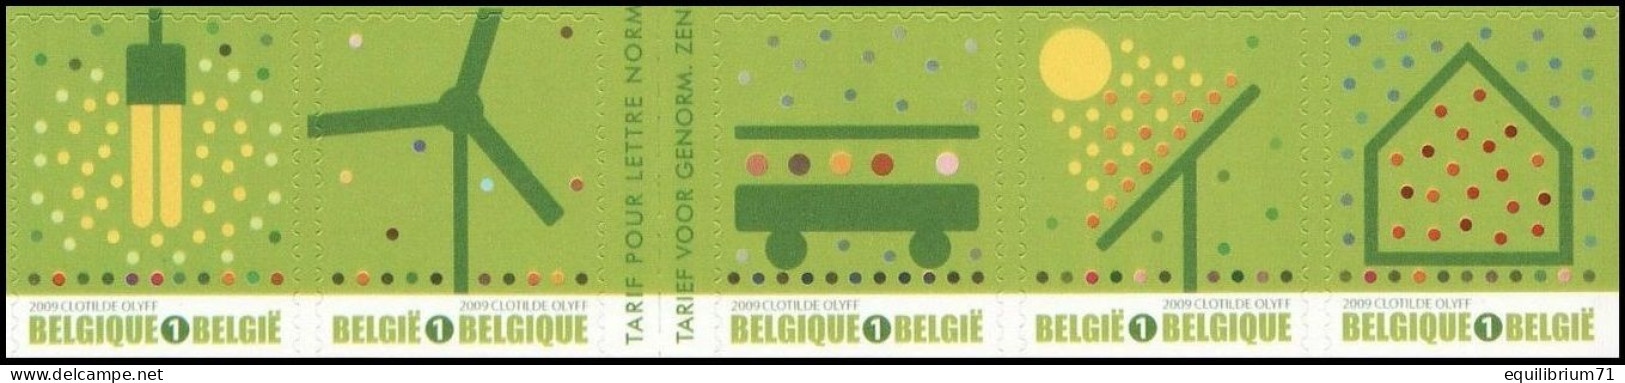 B104/C104**(3911-14 + 3915a) - Timbres Verts/Groene Zegels/Grüne Briefmarken - 1/2 Carnet/1/2 Boekje - BELGIQUE / BELGIË - 1997-… Permanente Geldigheid [B]